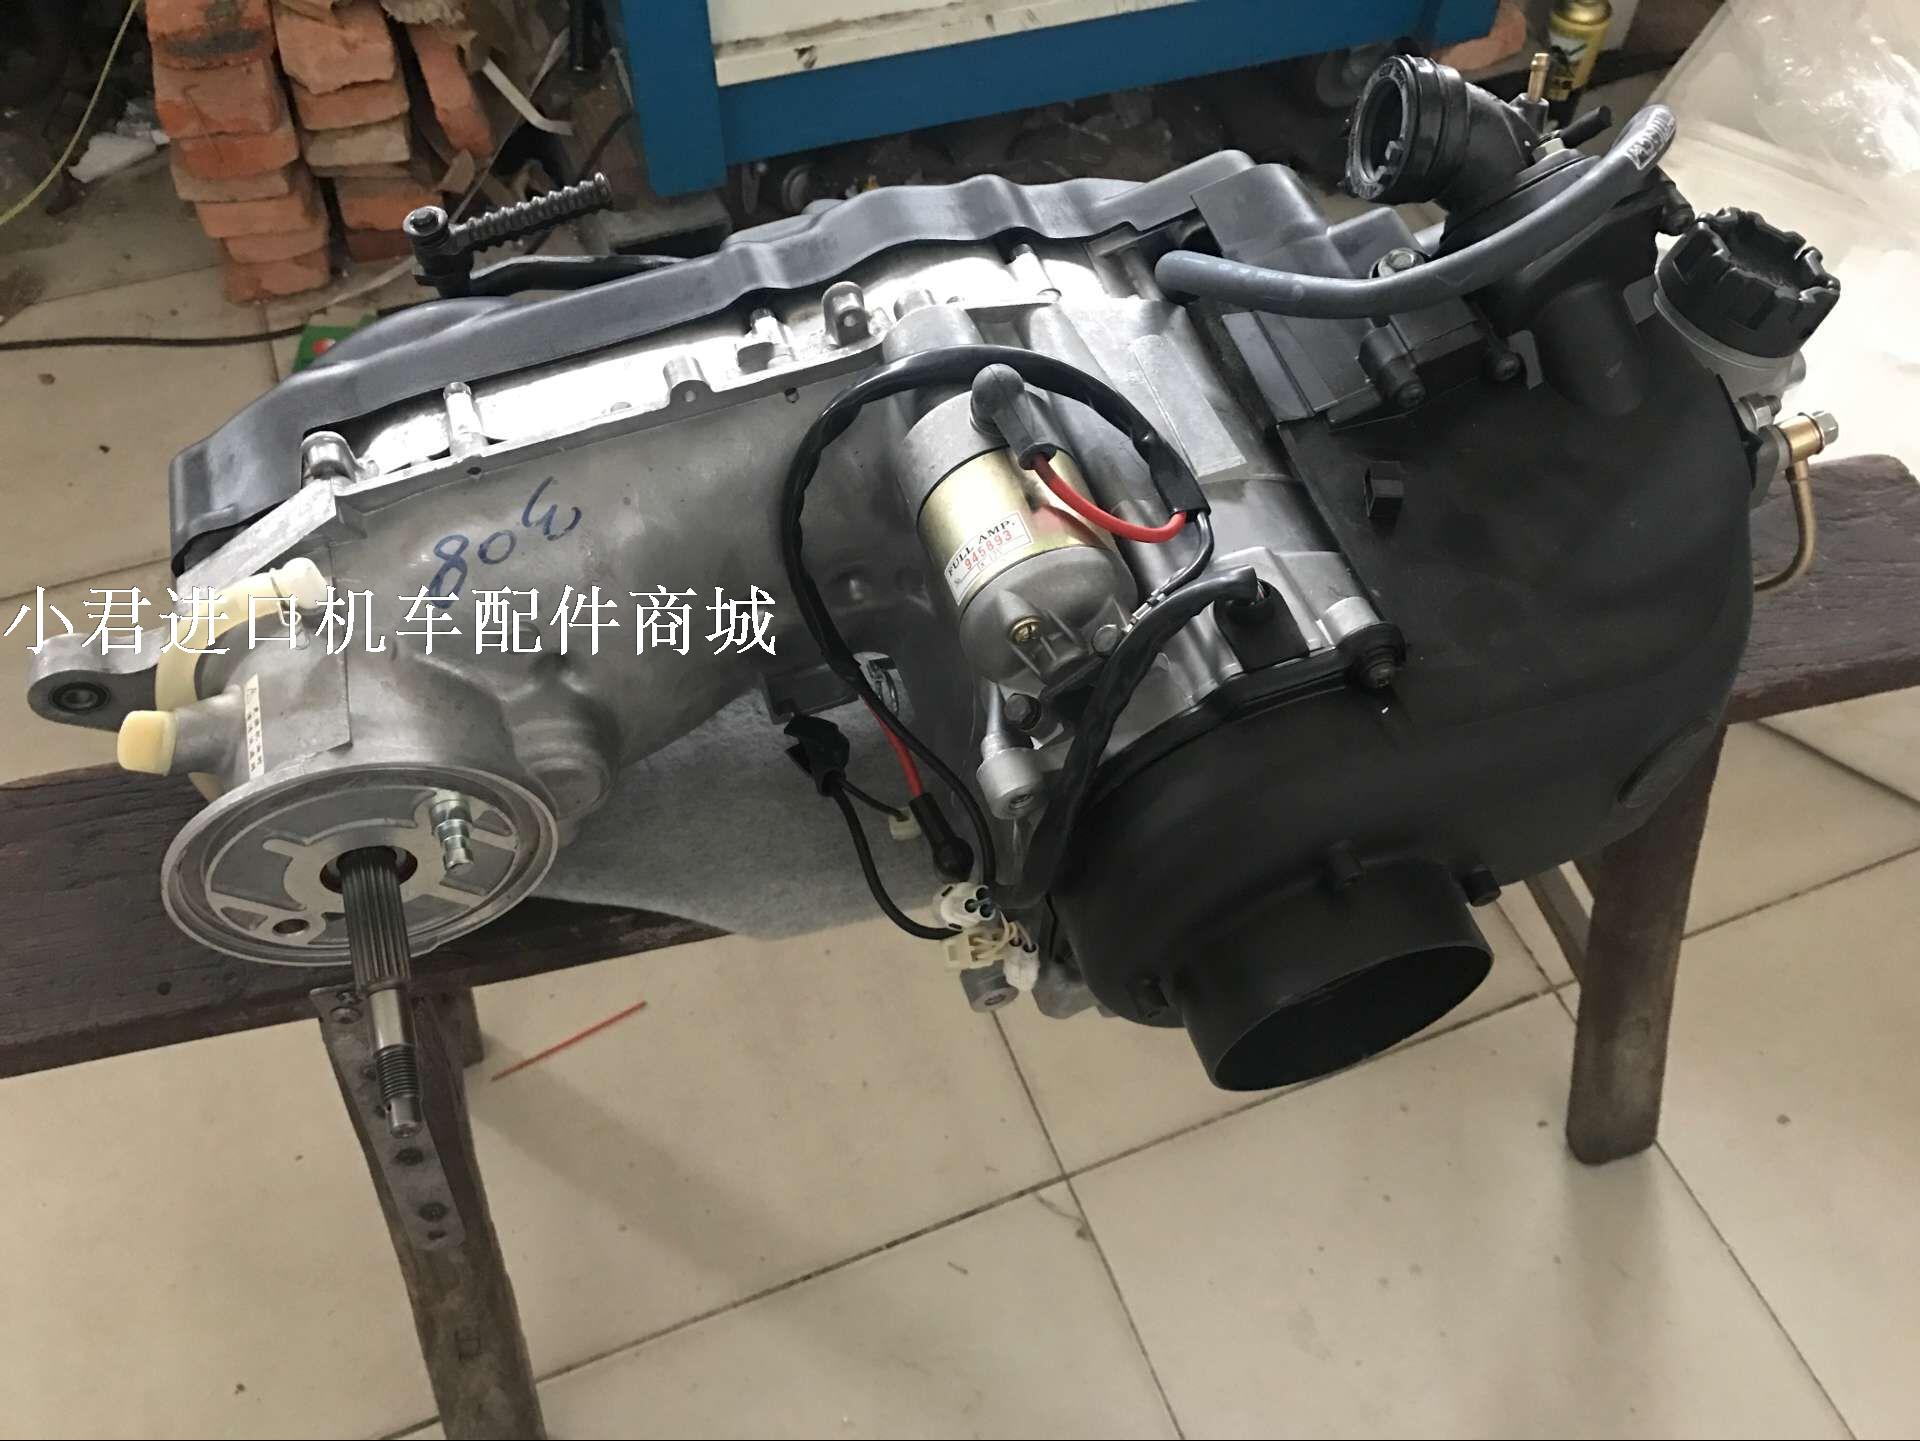 全新库存适用凌鹰雅马哈4CW-125CC摩托车发动机总成 引擎进口